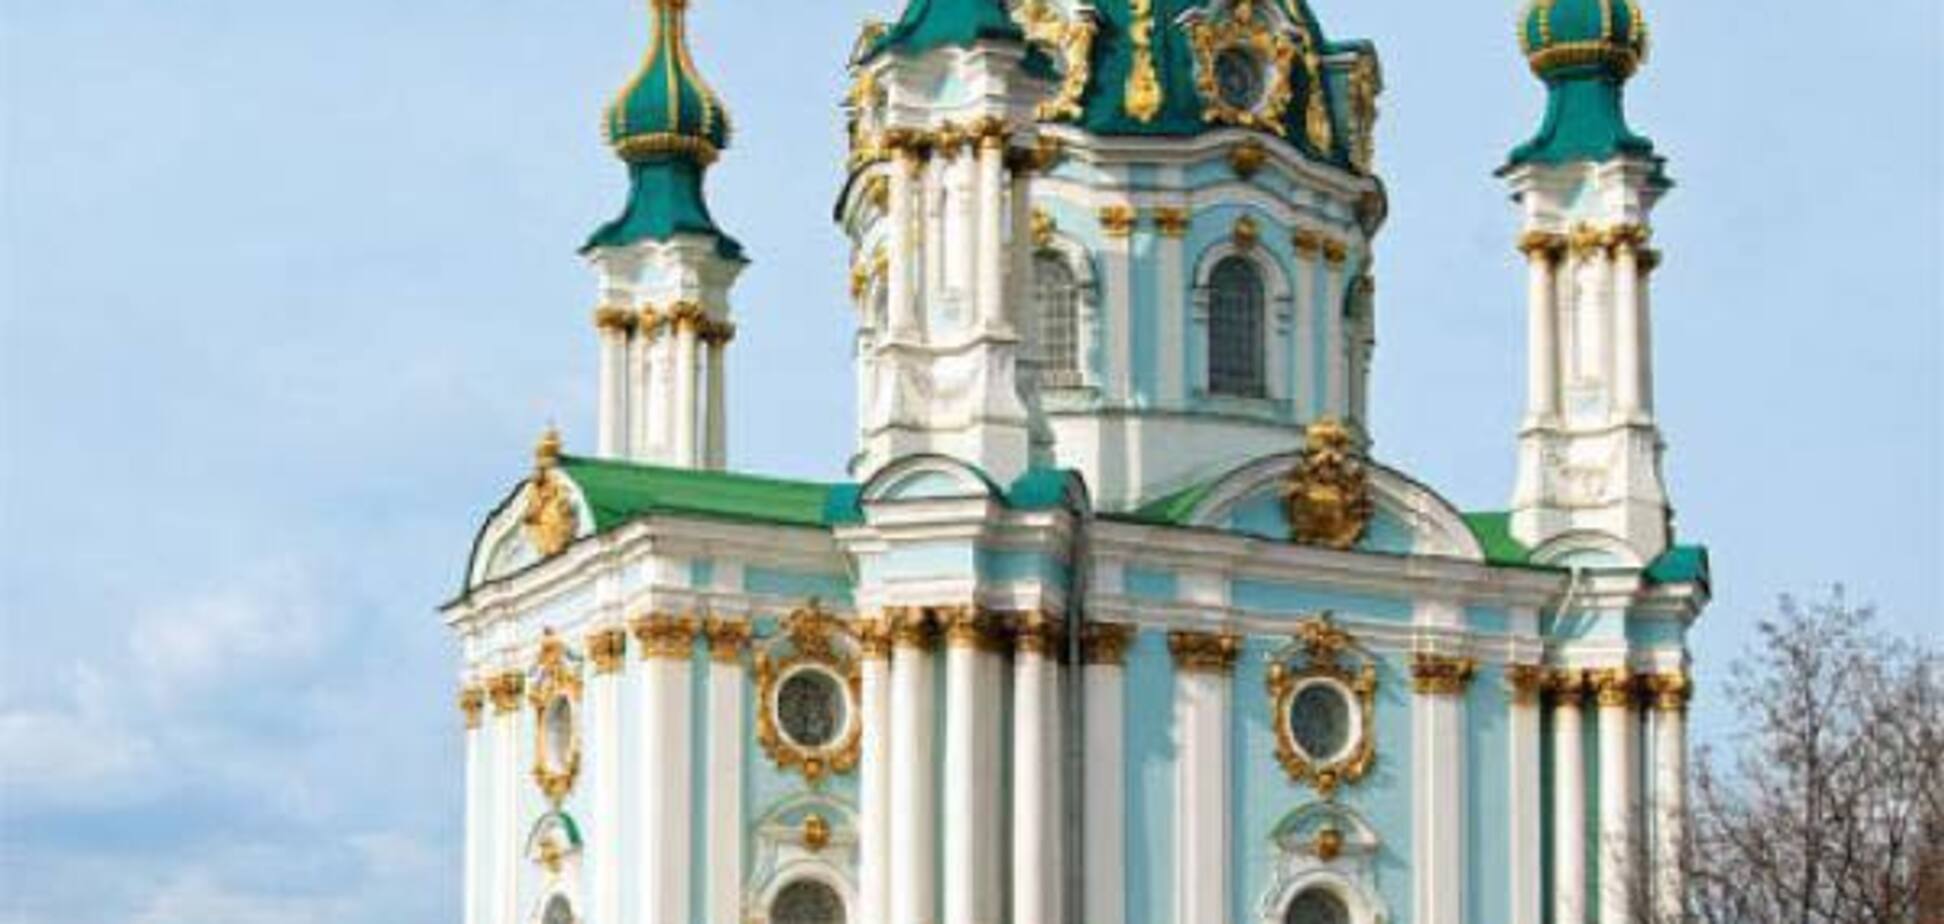 Нападение с коктейлями Молотова на Андреевскую церковь: появился прогноз по новой войне